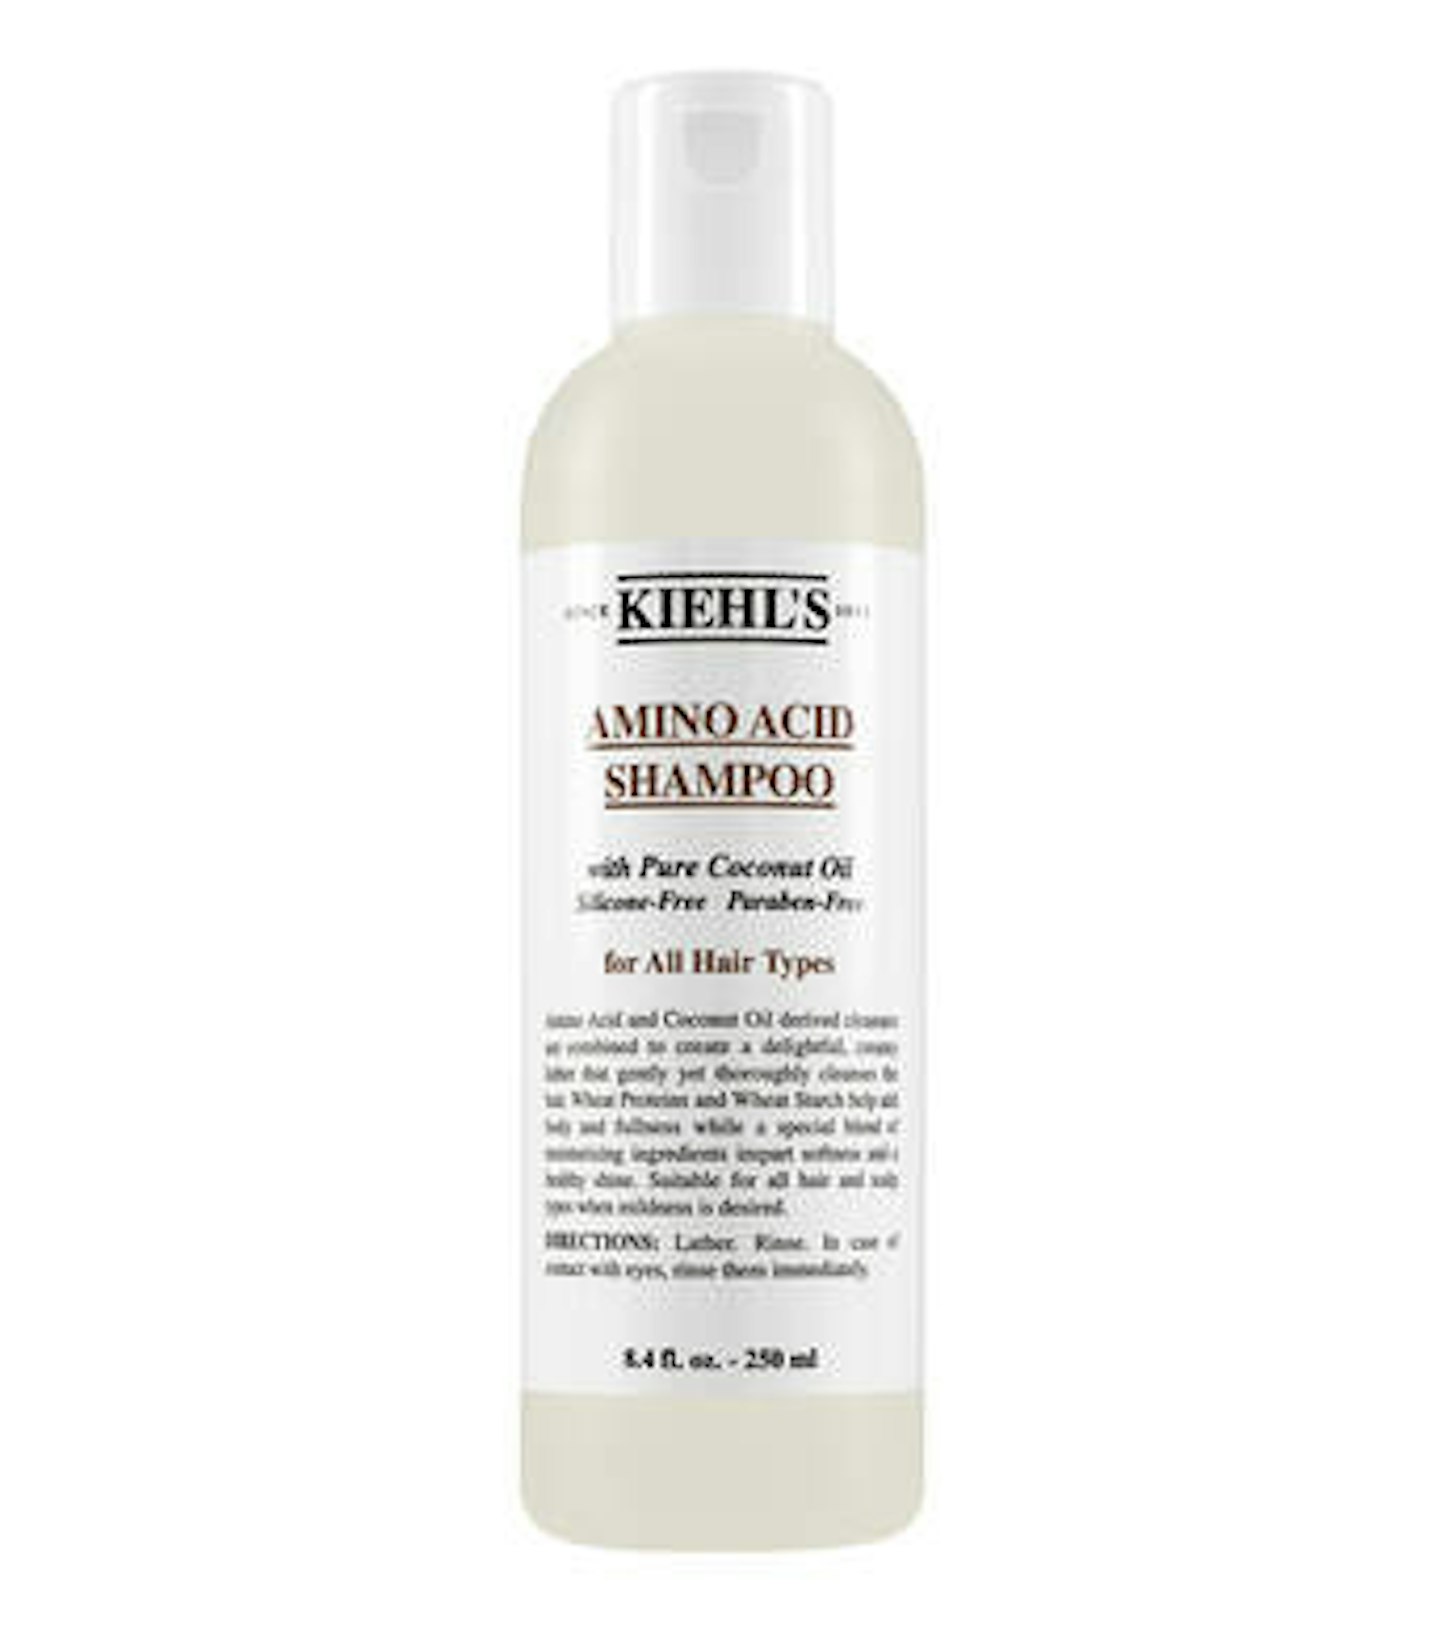 best clarifying shampoo Kiehl's Amino Acid Shampoo